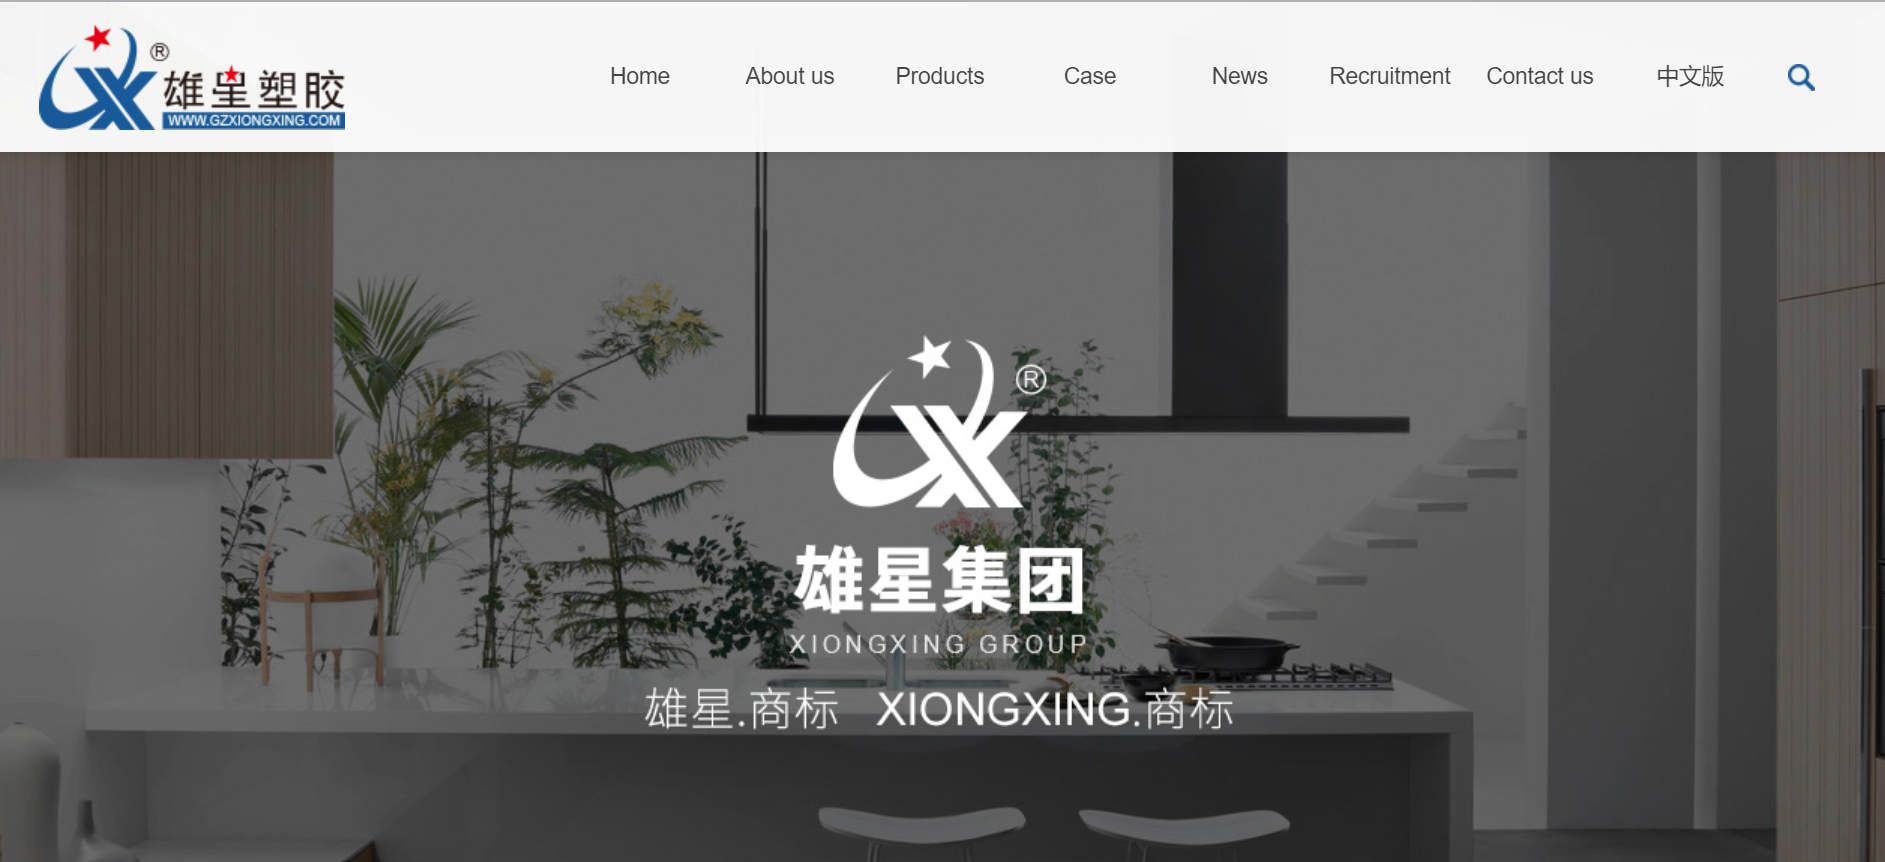 Guangzhou Xiongxing Plastic Products Co., Ltd.